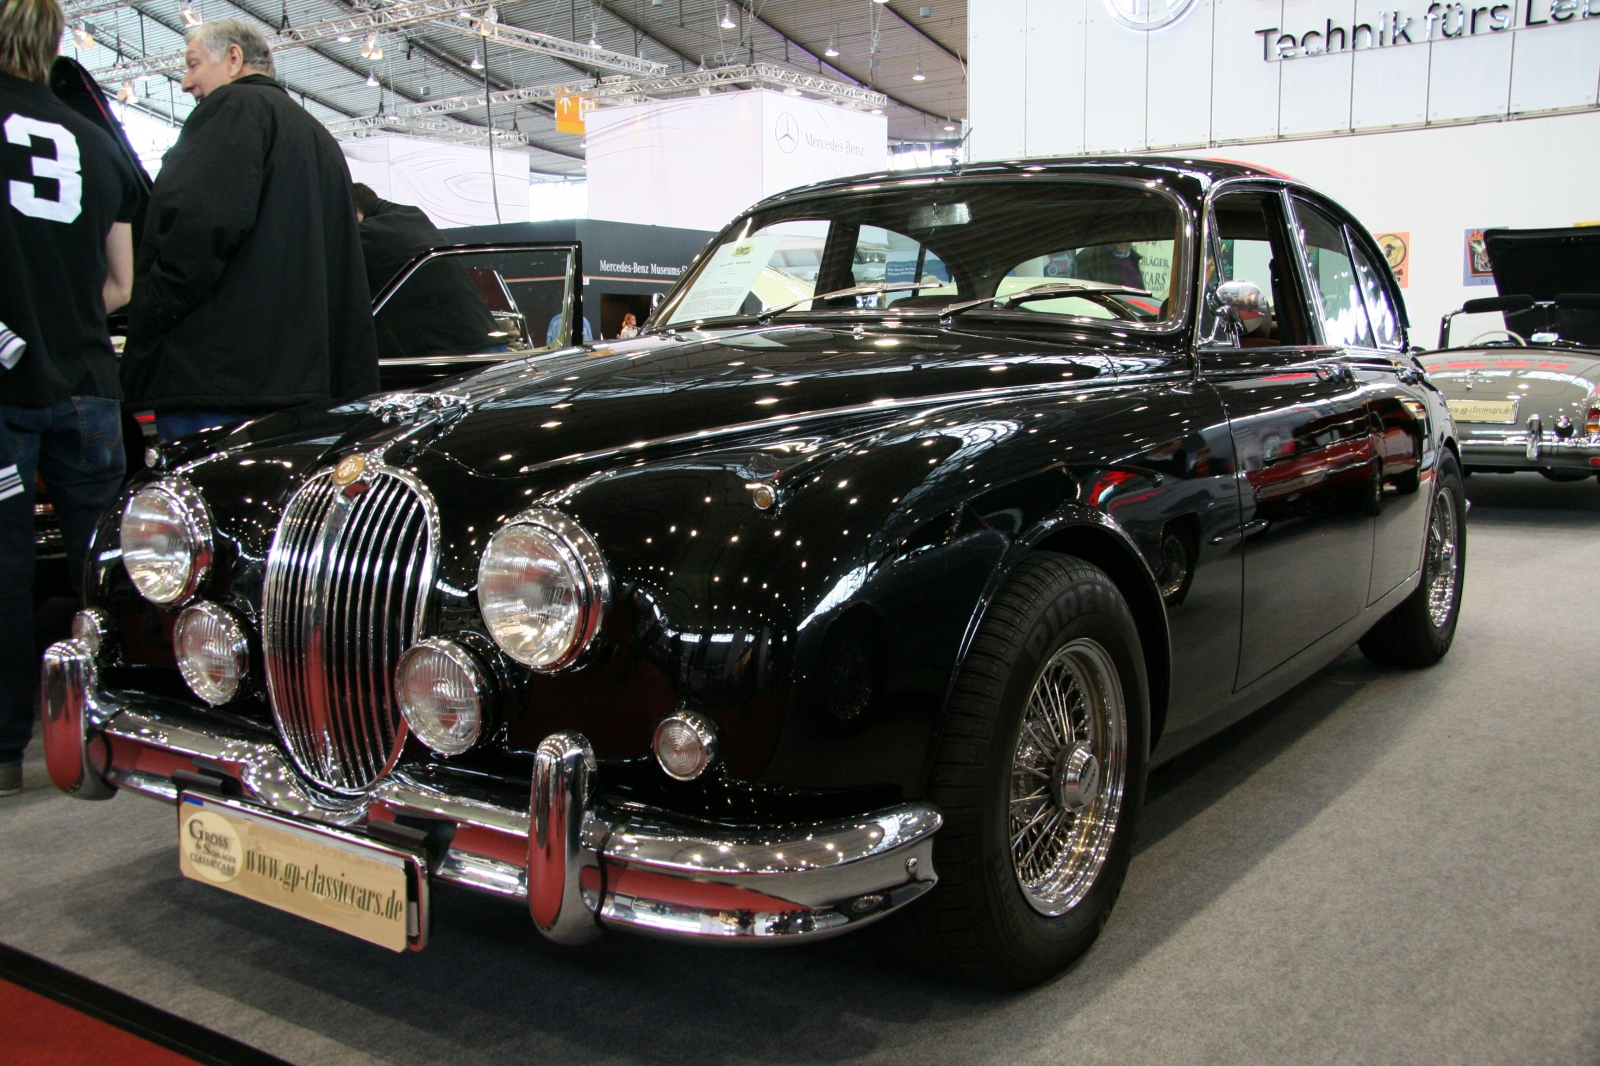 Jaguar Mk 2